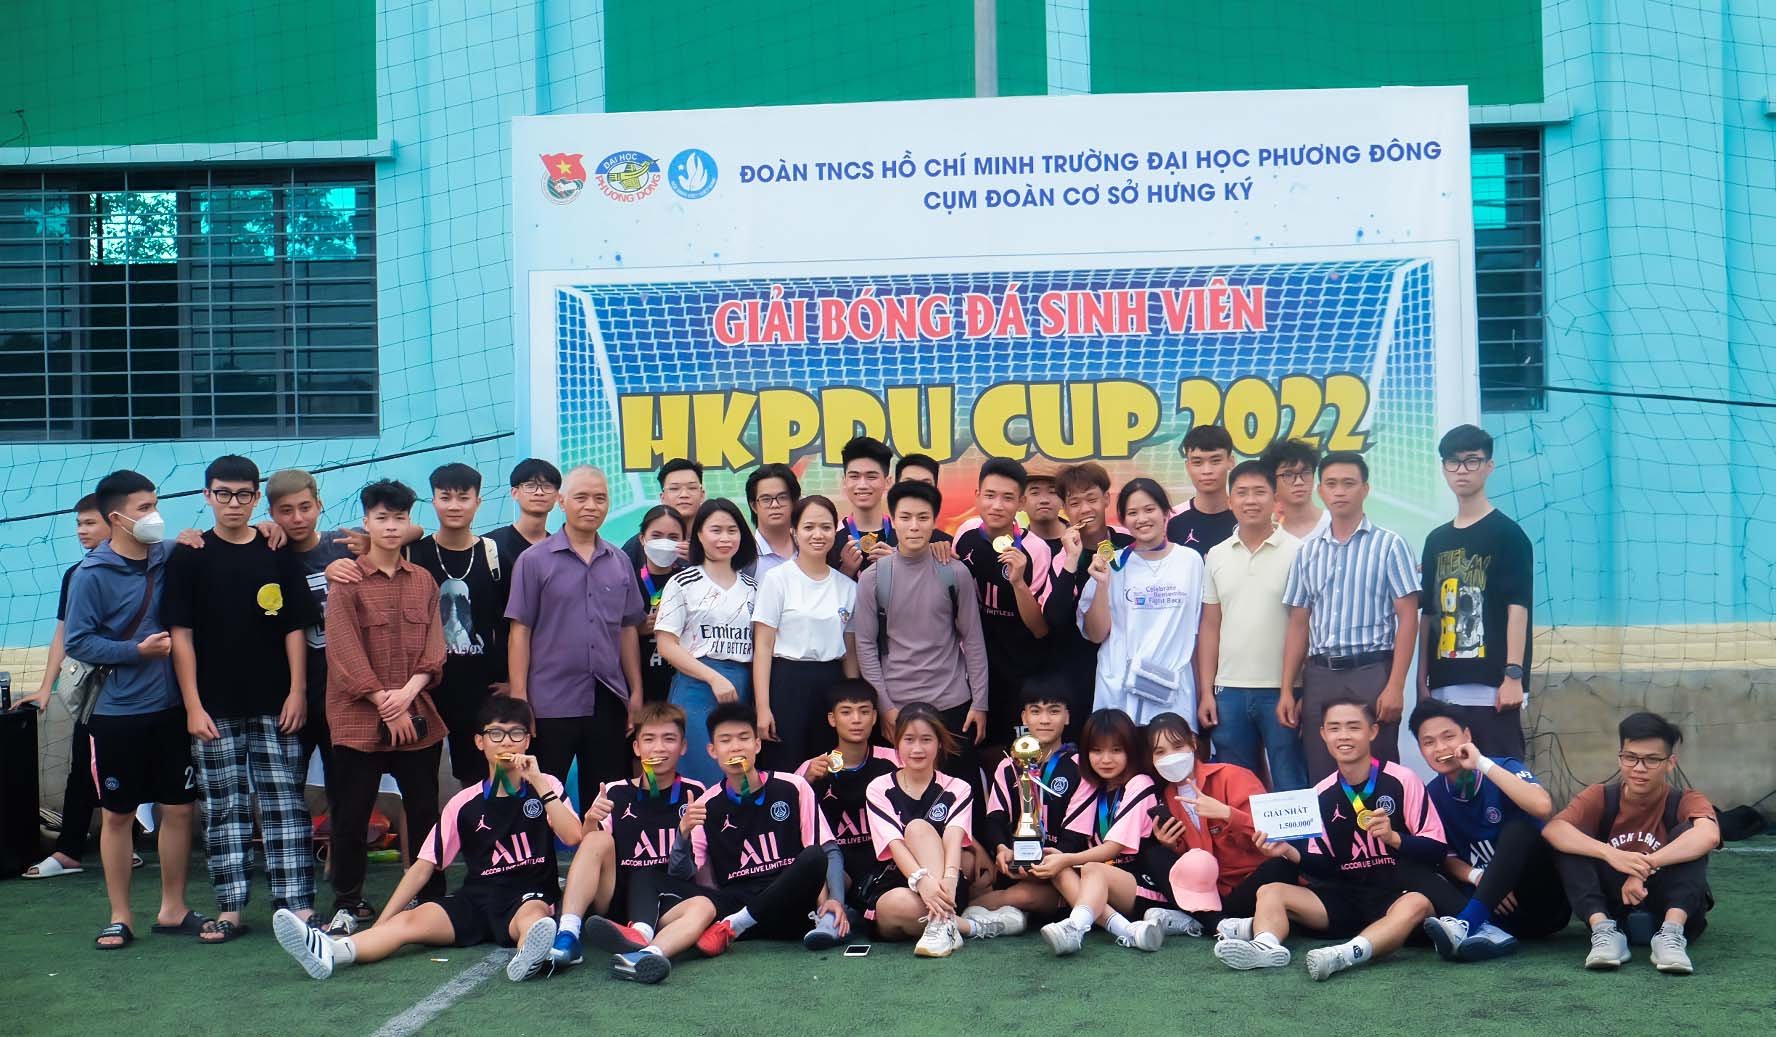 LỄ BẾ MẠC VÀ CHUNG KẾT GIẢI BÓNG ĐÁ SINH VIÊN - HKPDU CUP 2022